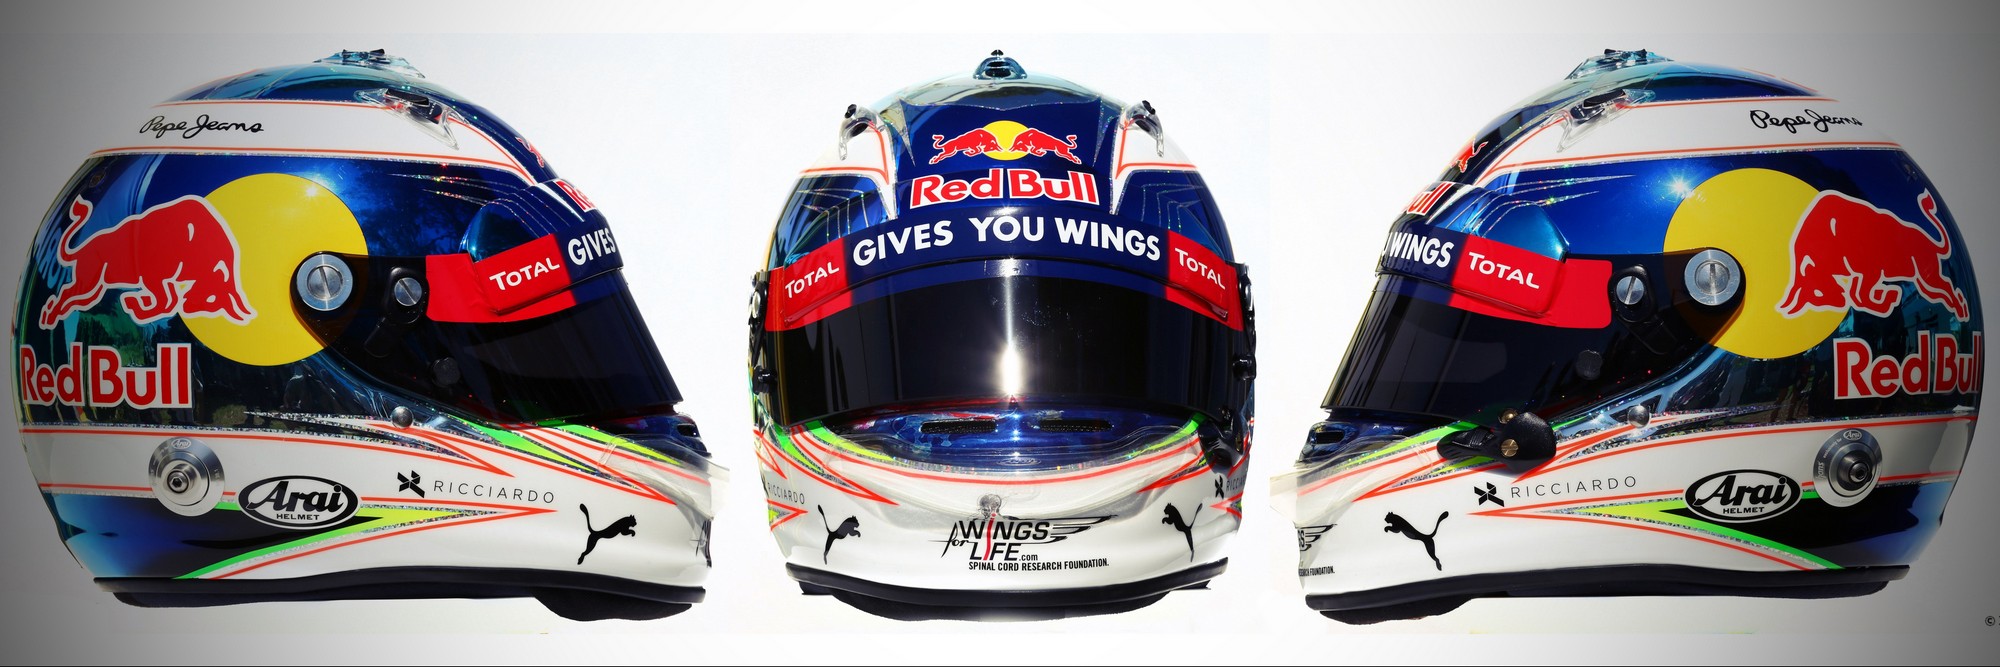 Шлем Даниэля Риккьярдо на сезон 2016 года | 2016 helmet of Daniel Ricciardo